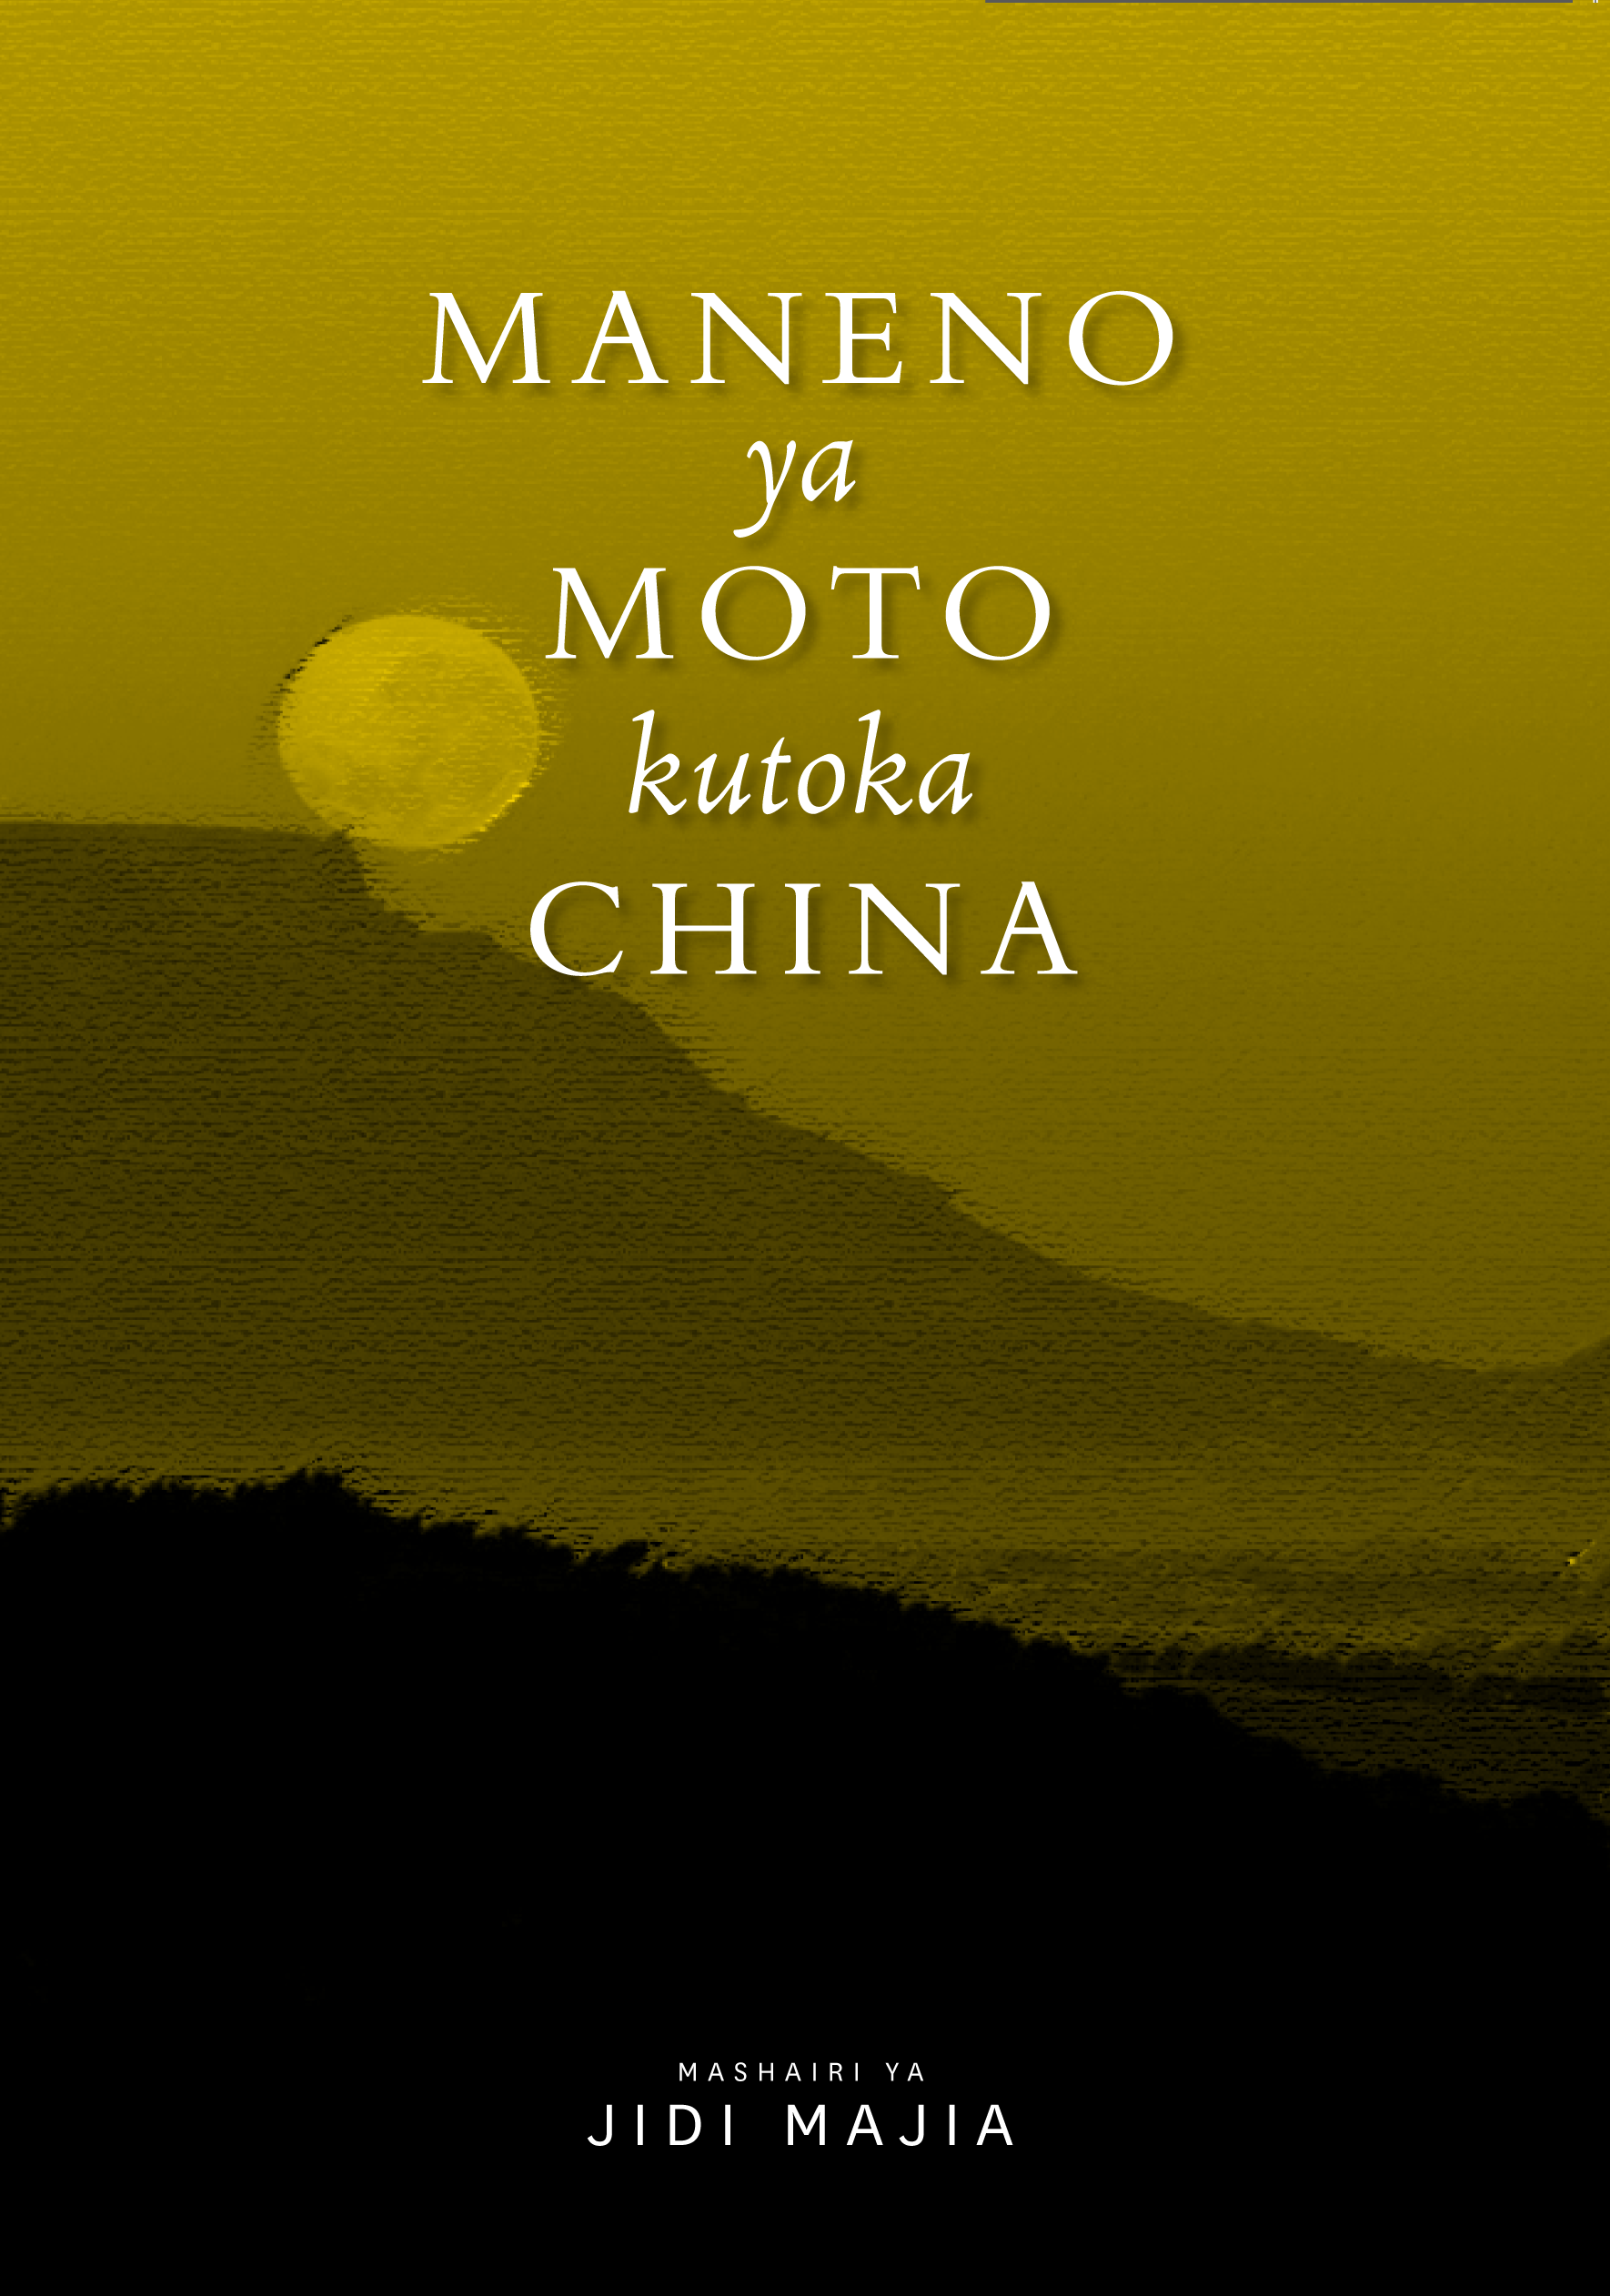 MANENO YA MOTO KUTOKA CHINA BOOK LAUNCH